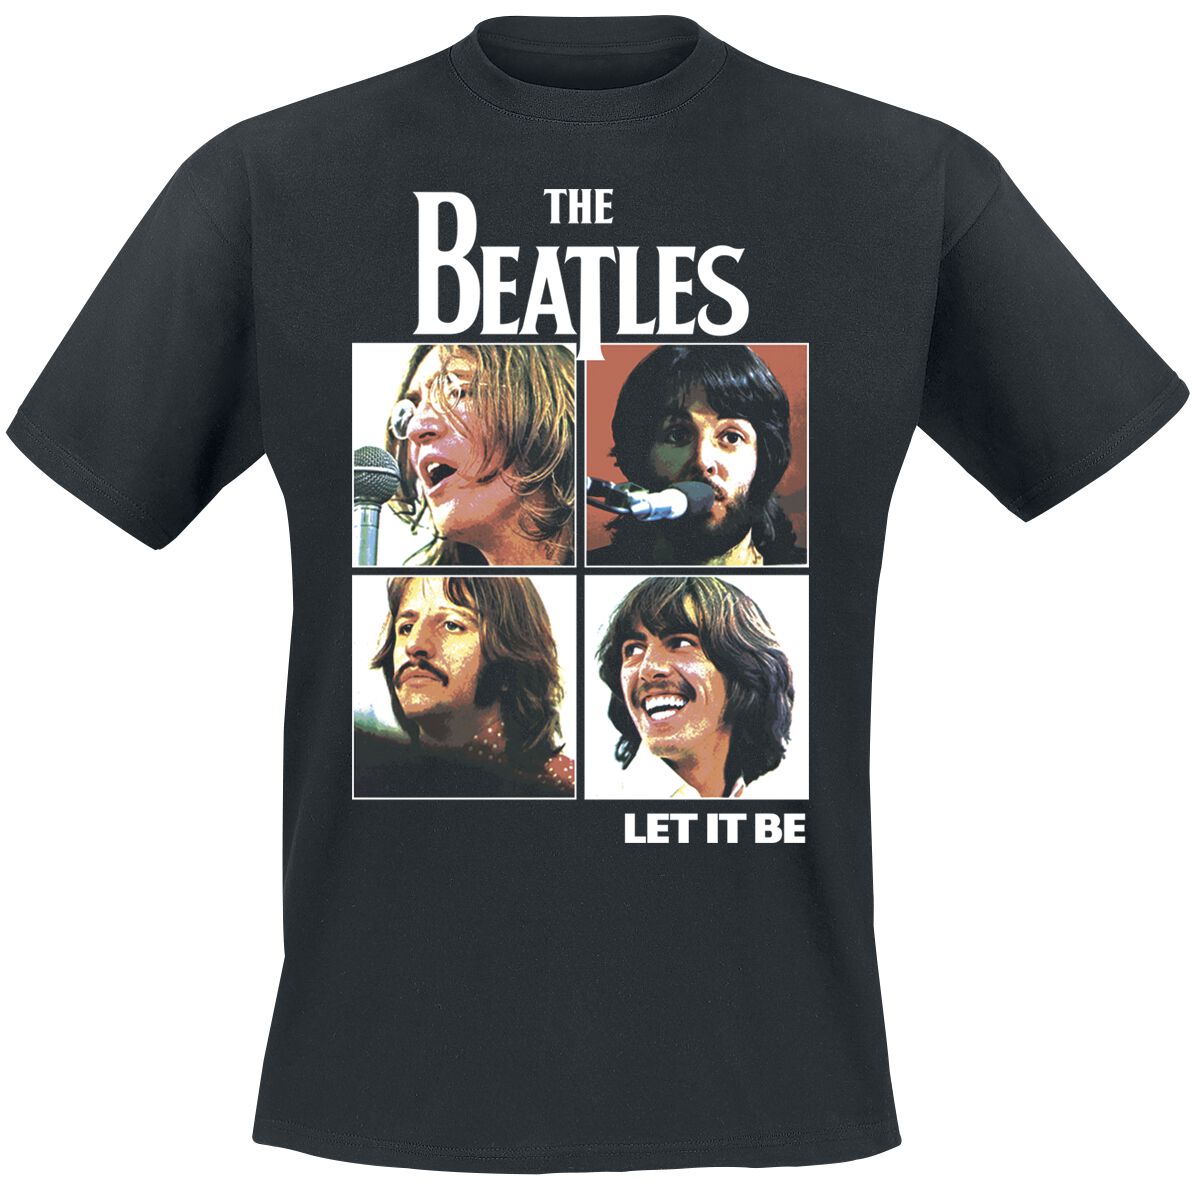 The Beatles T-Shirt - Let it be - S bis 3XL - für Männer - Größe XXL - schwarz  - Lizenziertes Merchandise! von The Beatles